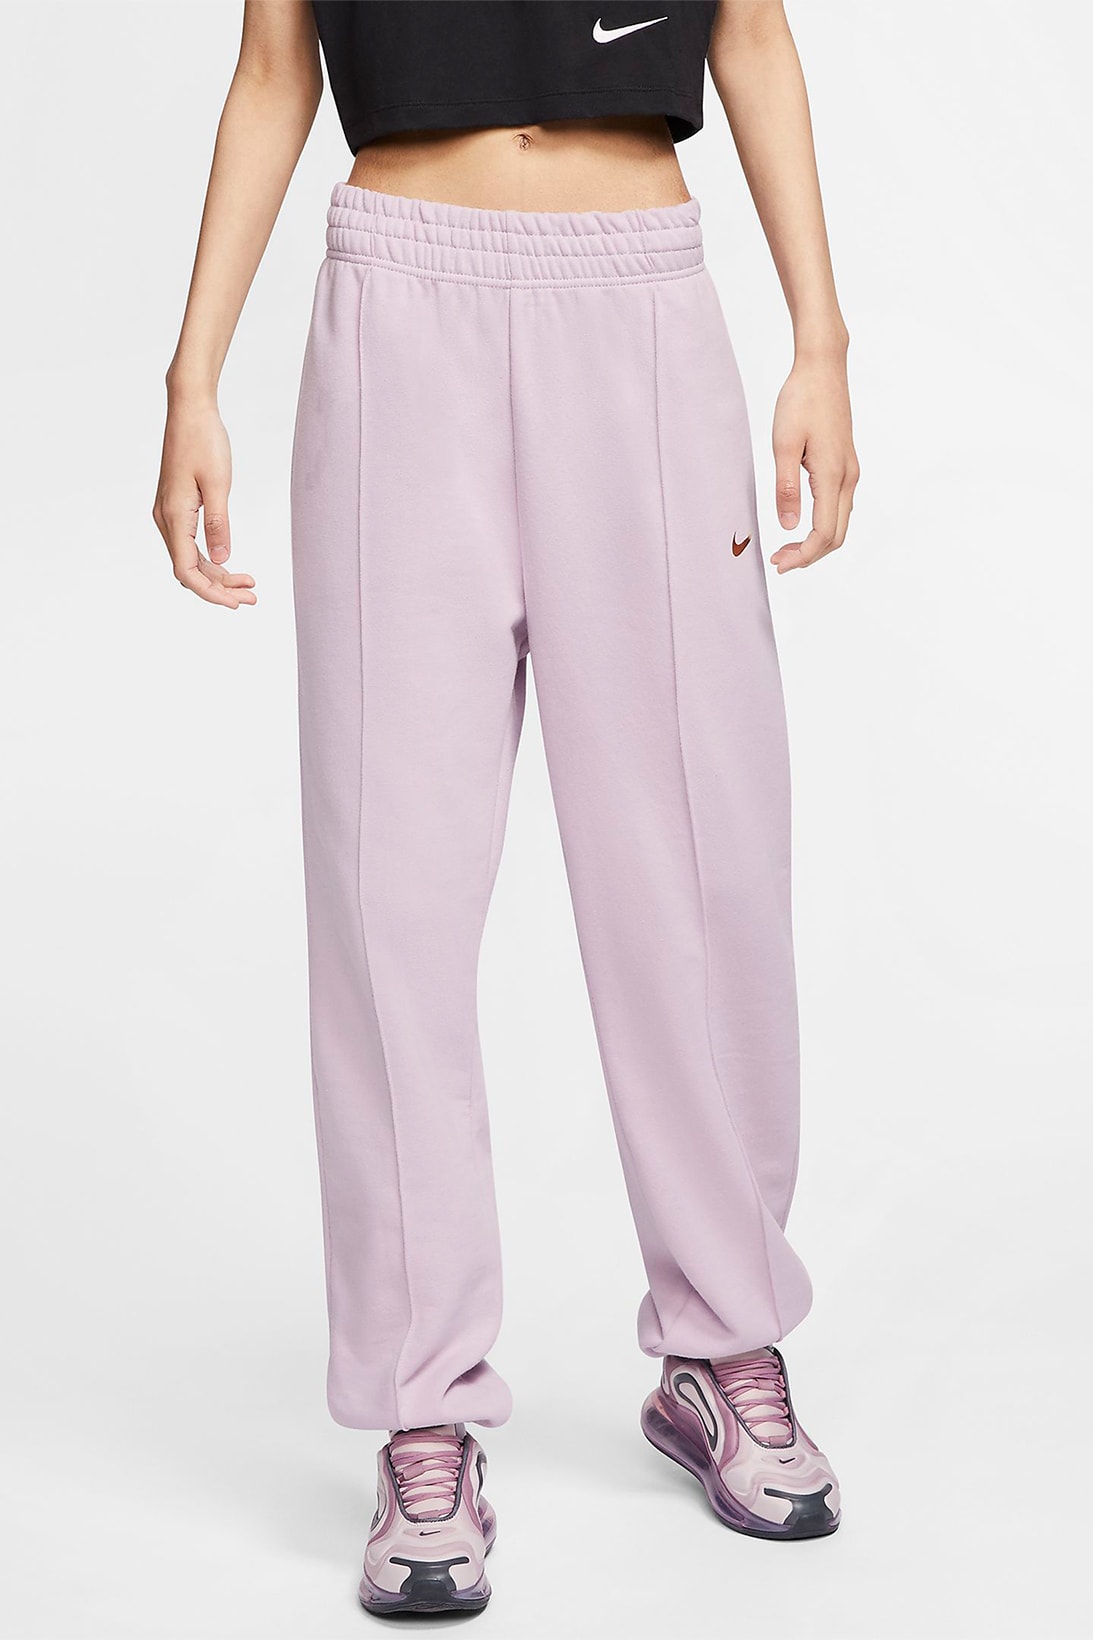 nike sportswear womens sweatpants trousers pastel purple pink green